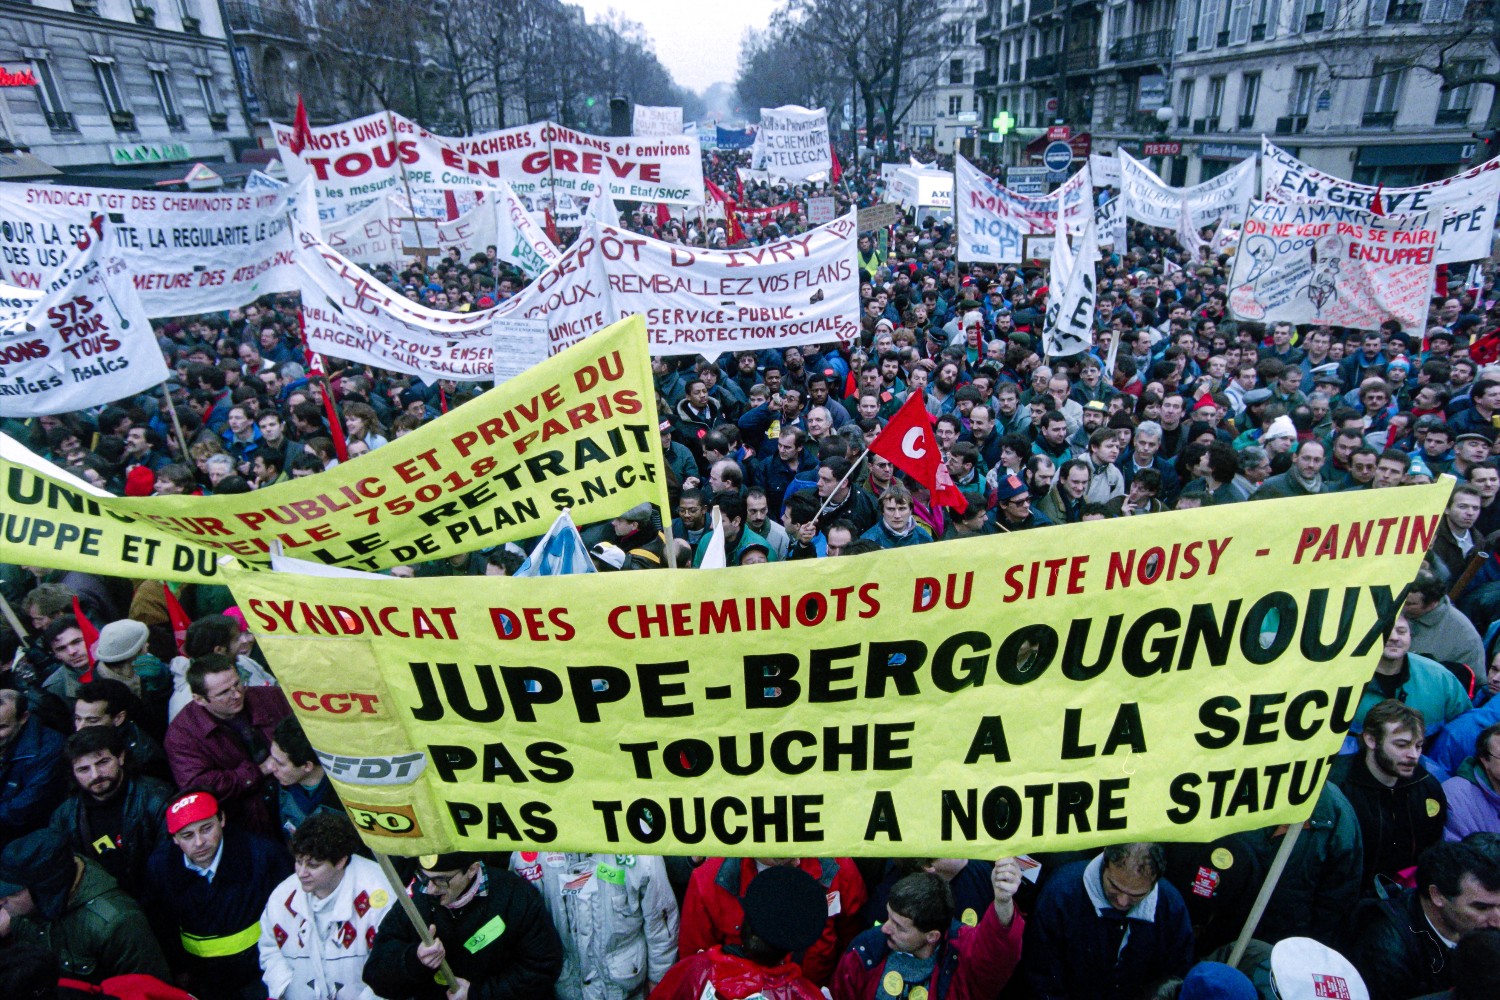 retraites lannee 1995 reste t elle la reference des syndicats en matiere de greves et de manifestations